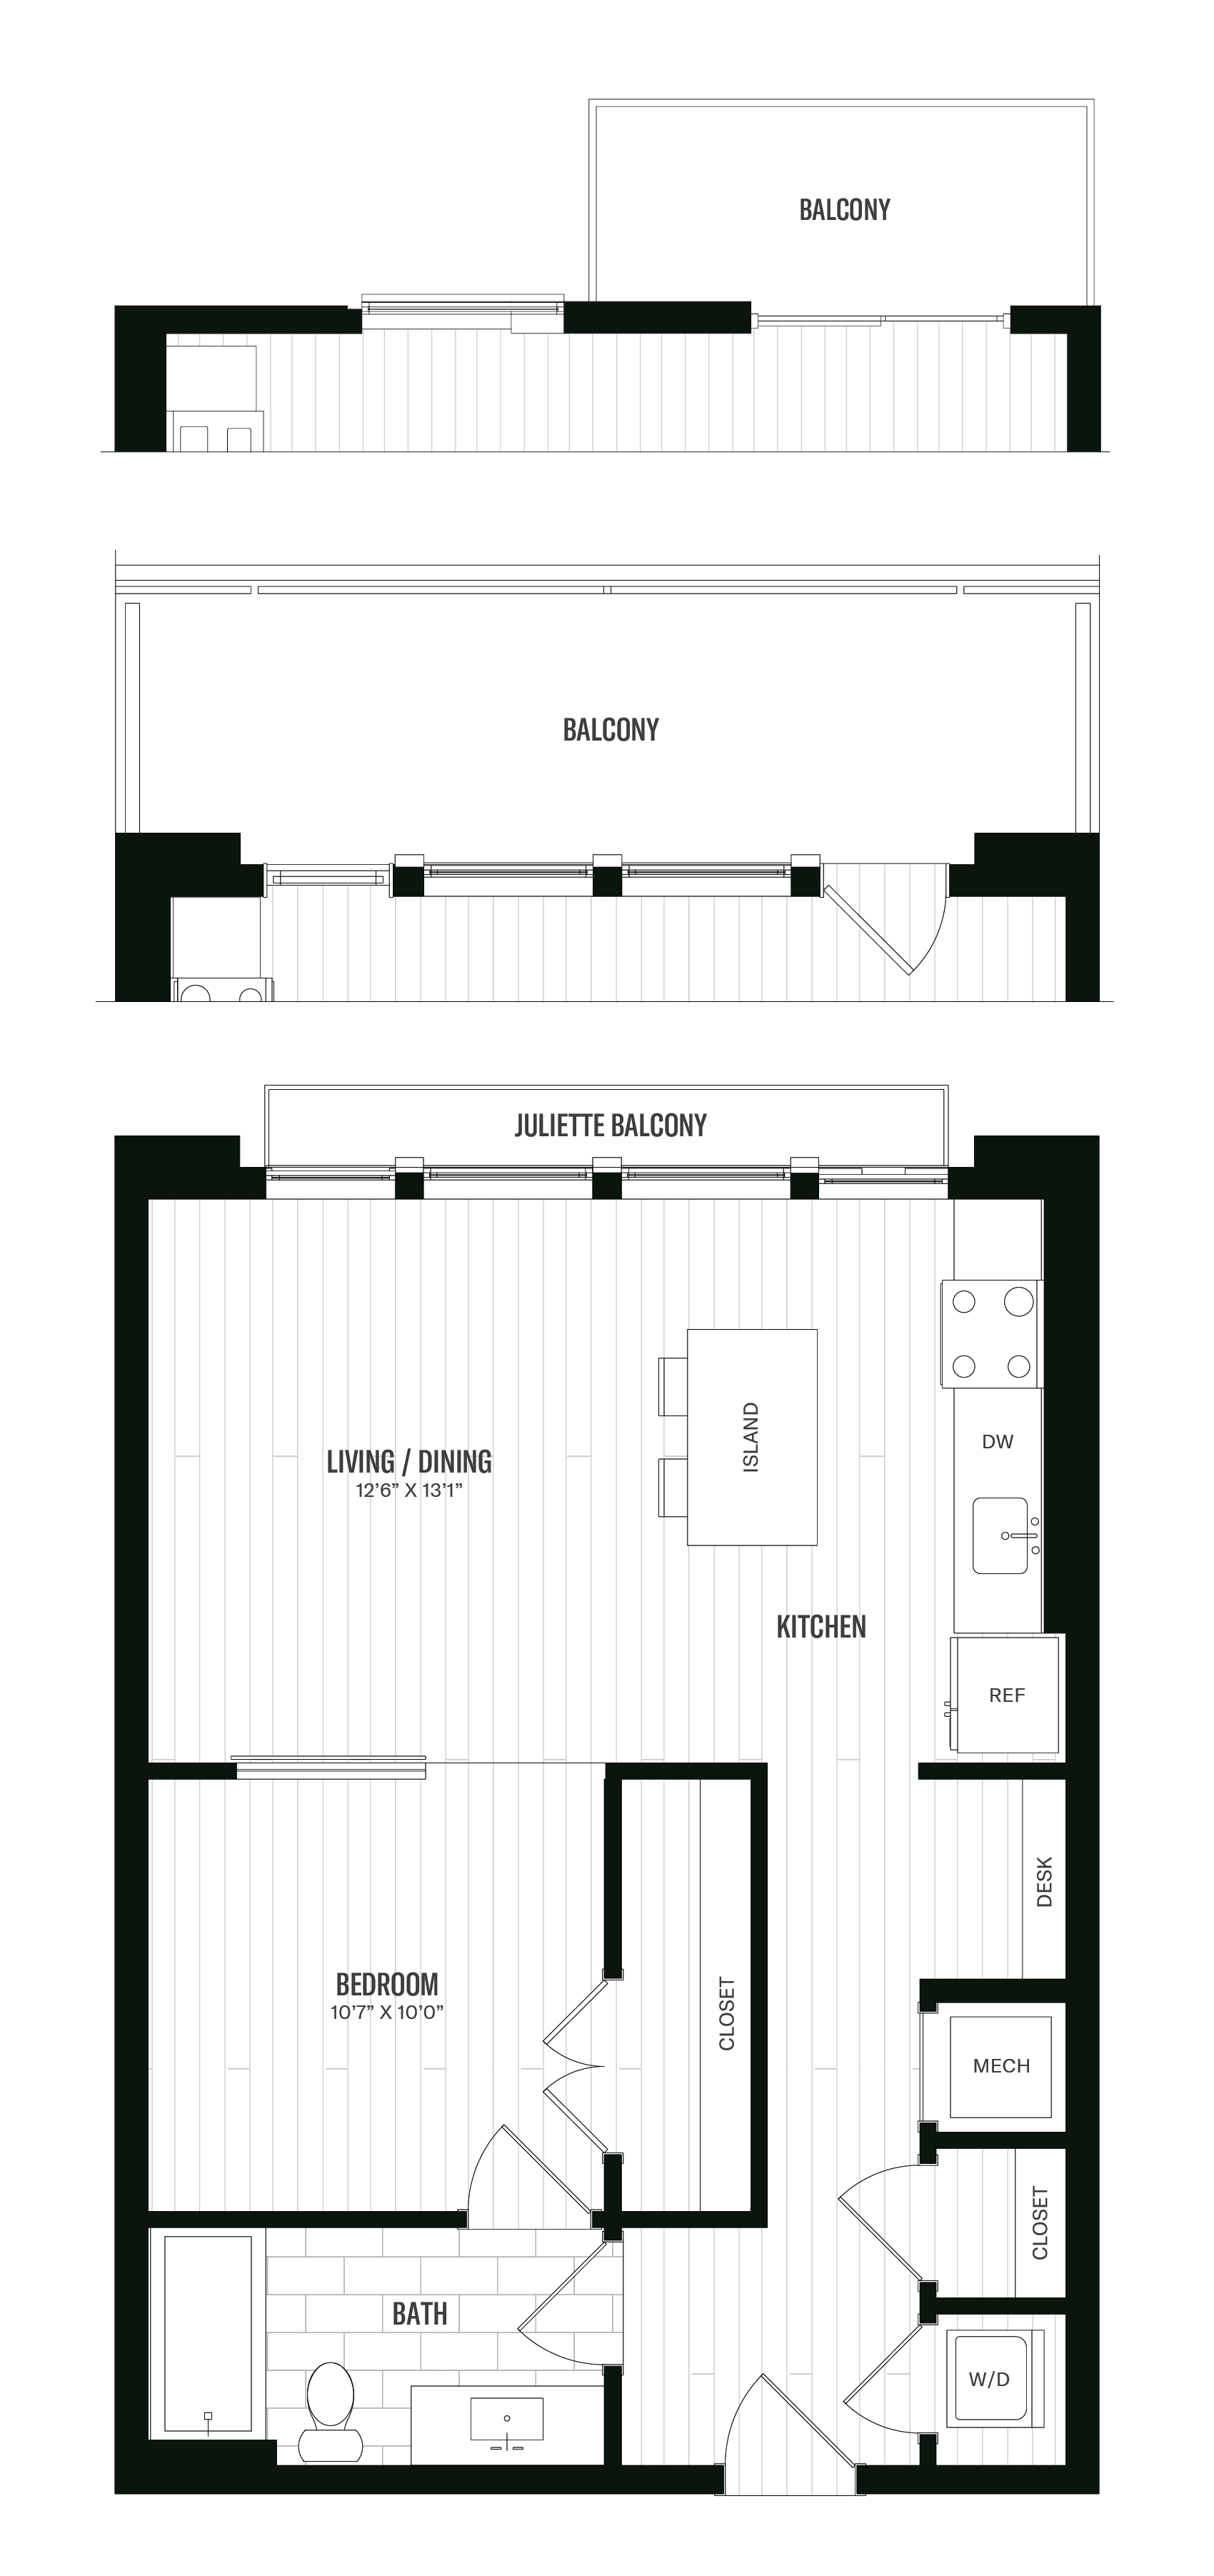 Floorplan image of unit 415